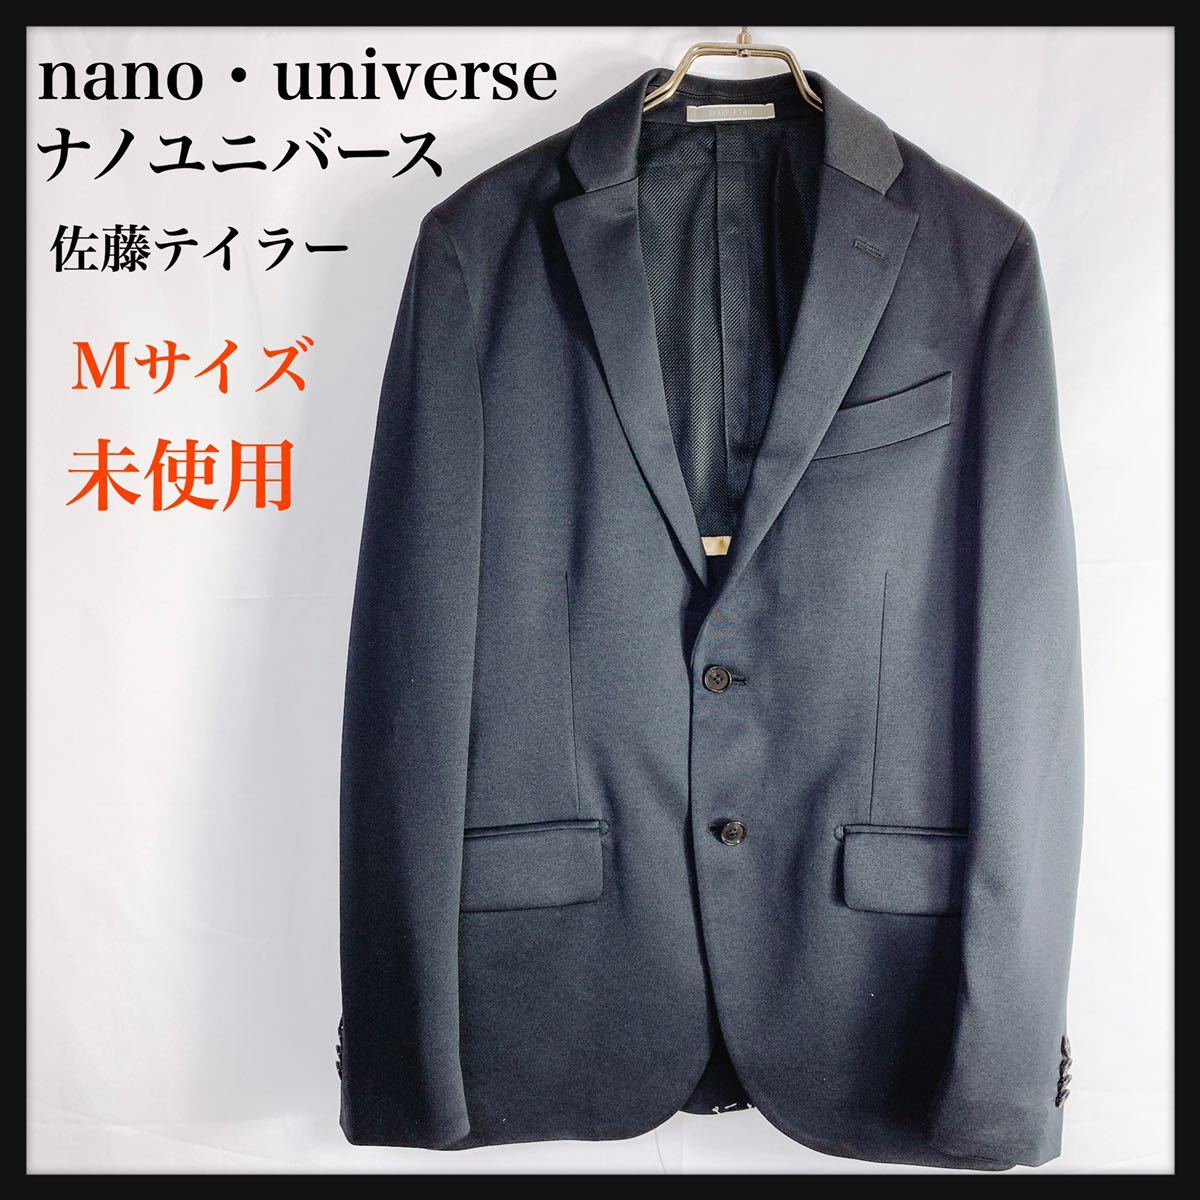 グッドふとんマーク取得 nano・universe×佐藤テーラー スーツセット50 